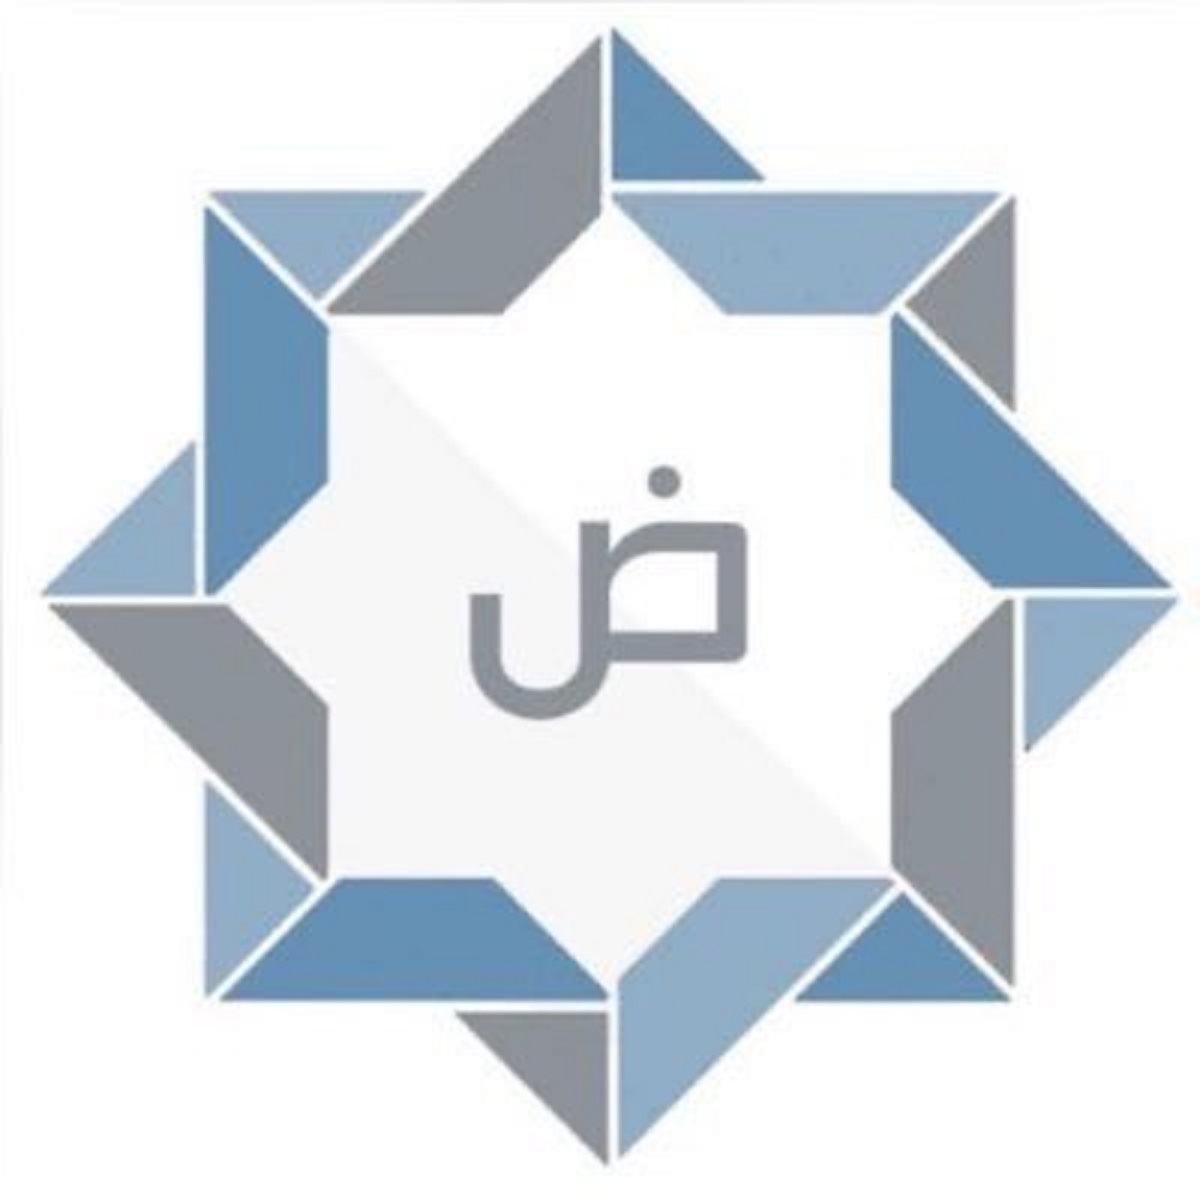  Department of Arabic language